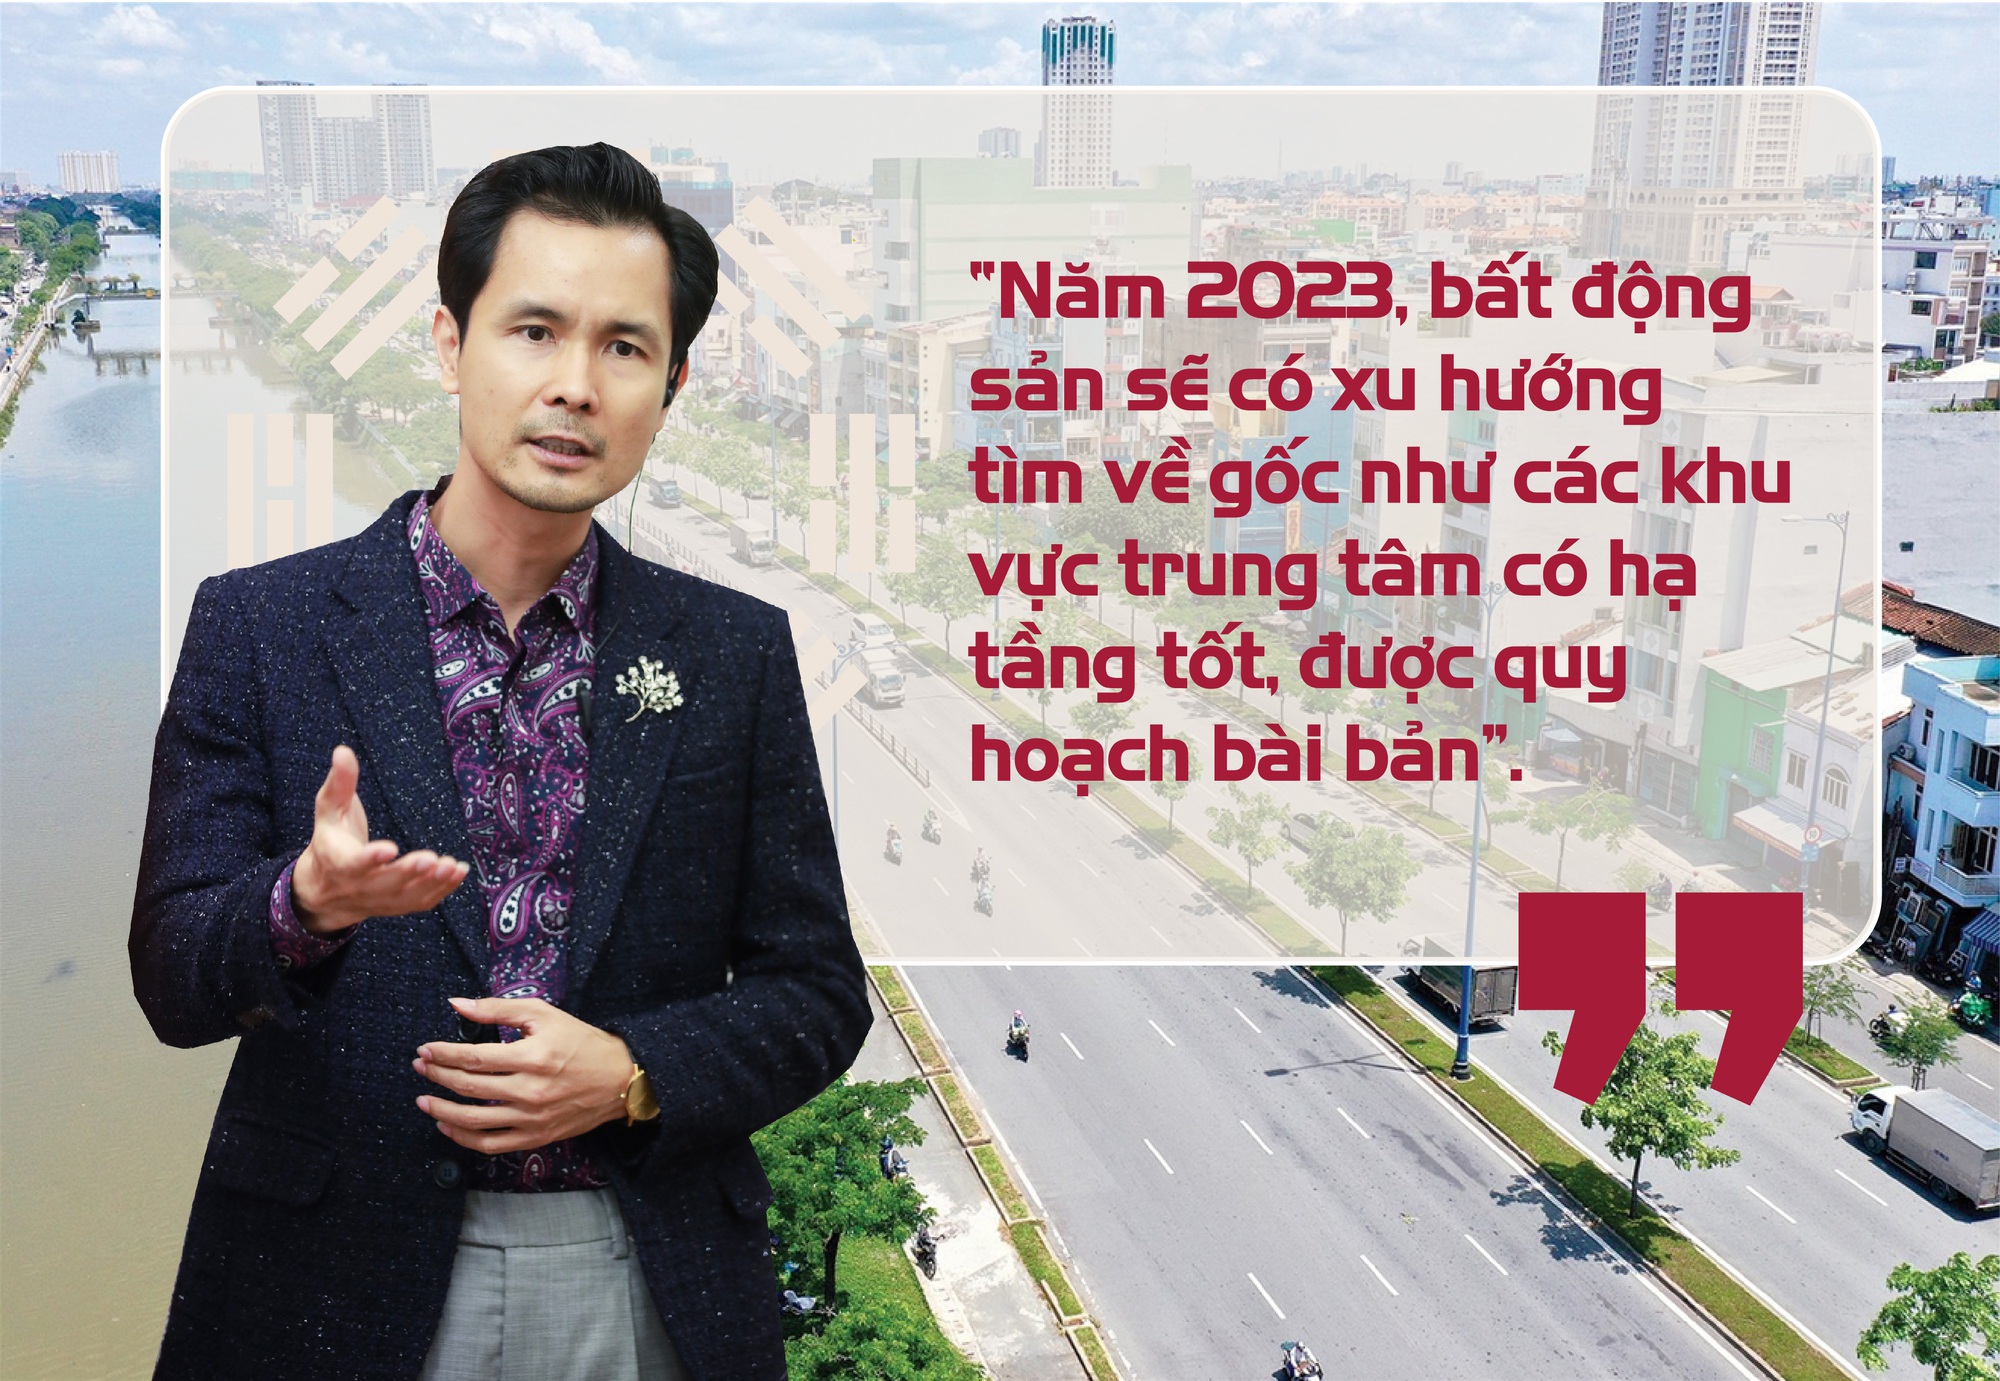 Chuyên gia phong thuỷ Phạm Cương: Những tuổi đầu tư bất động sản tốt năm 2023 - Ảnh 2.